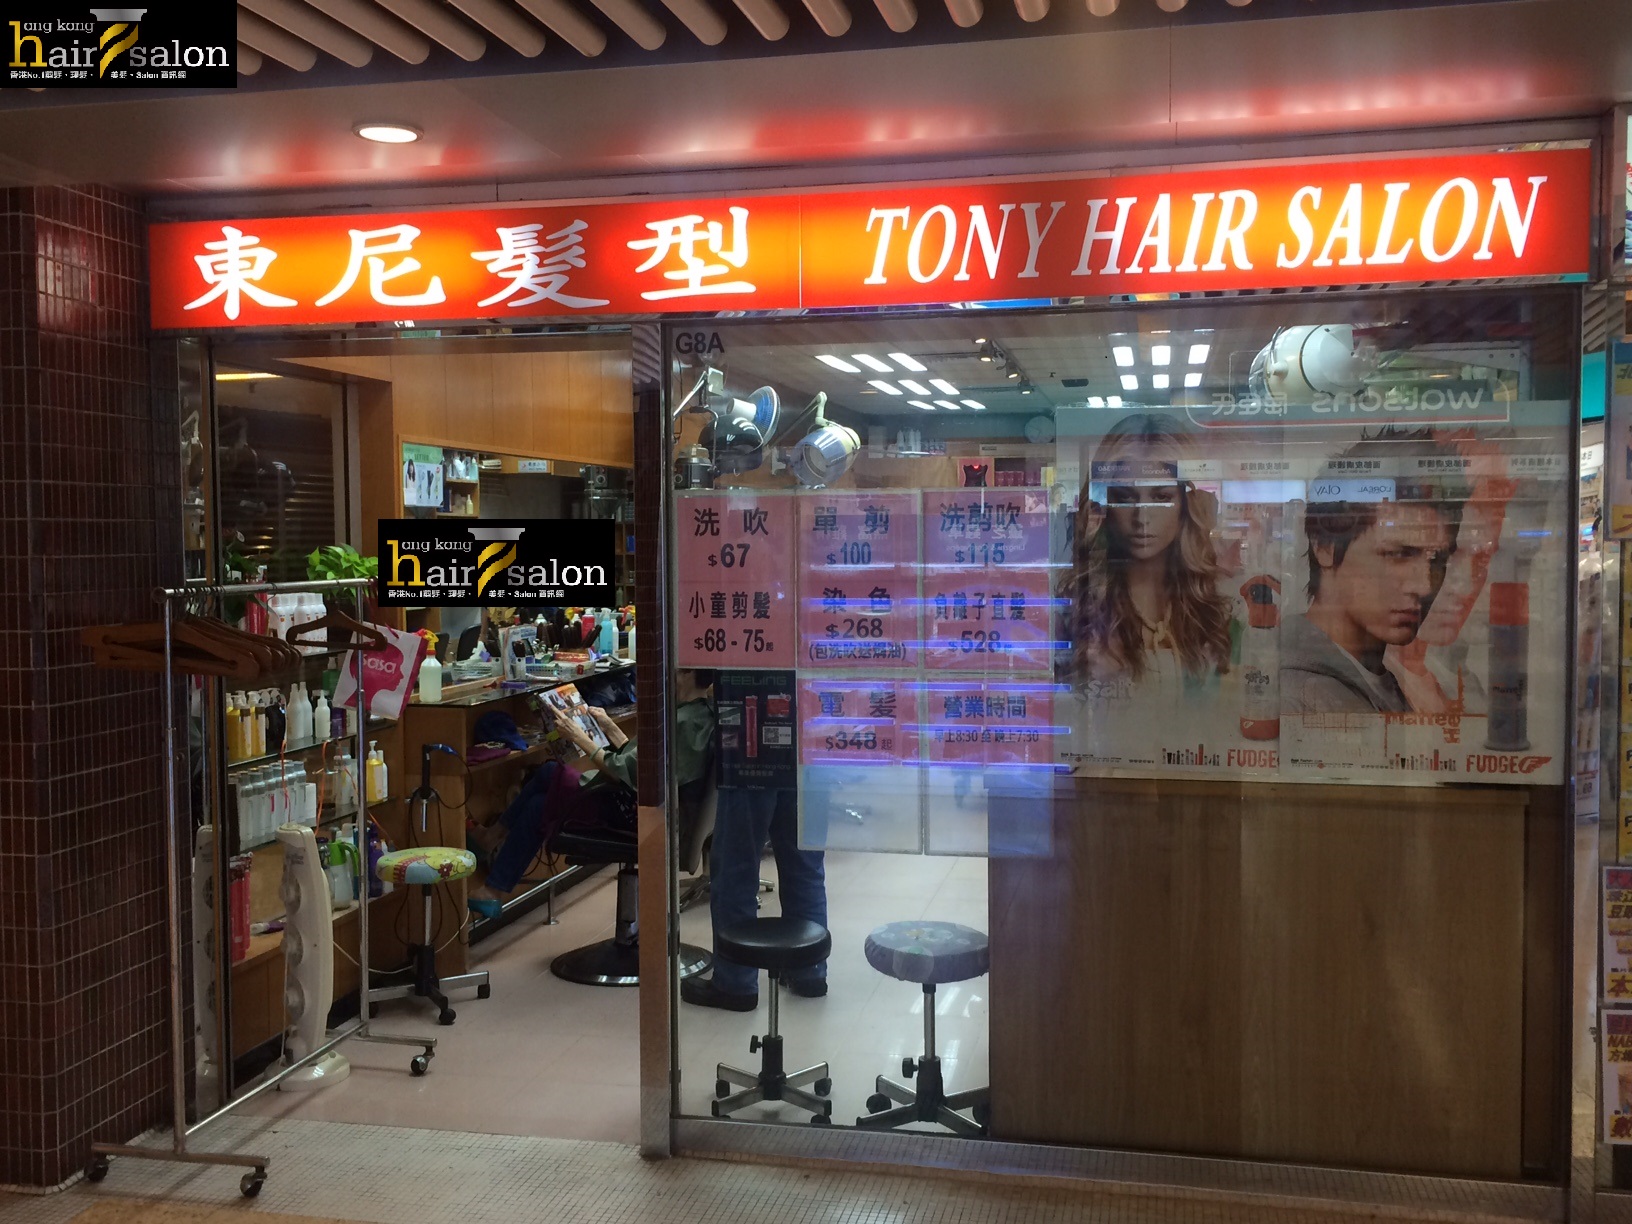 髮型屋: 東尼髮型 Tony Hair Salon